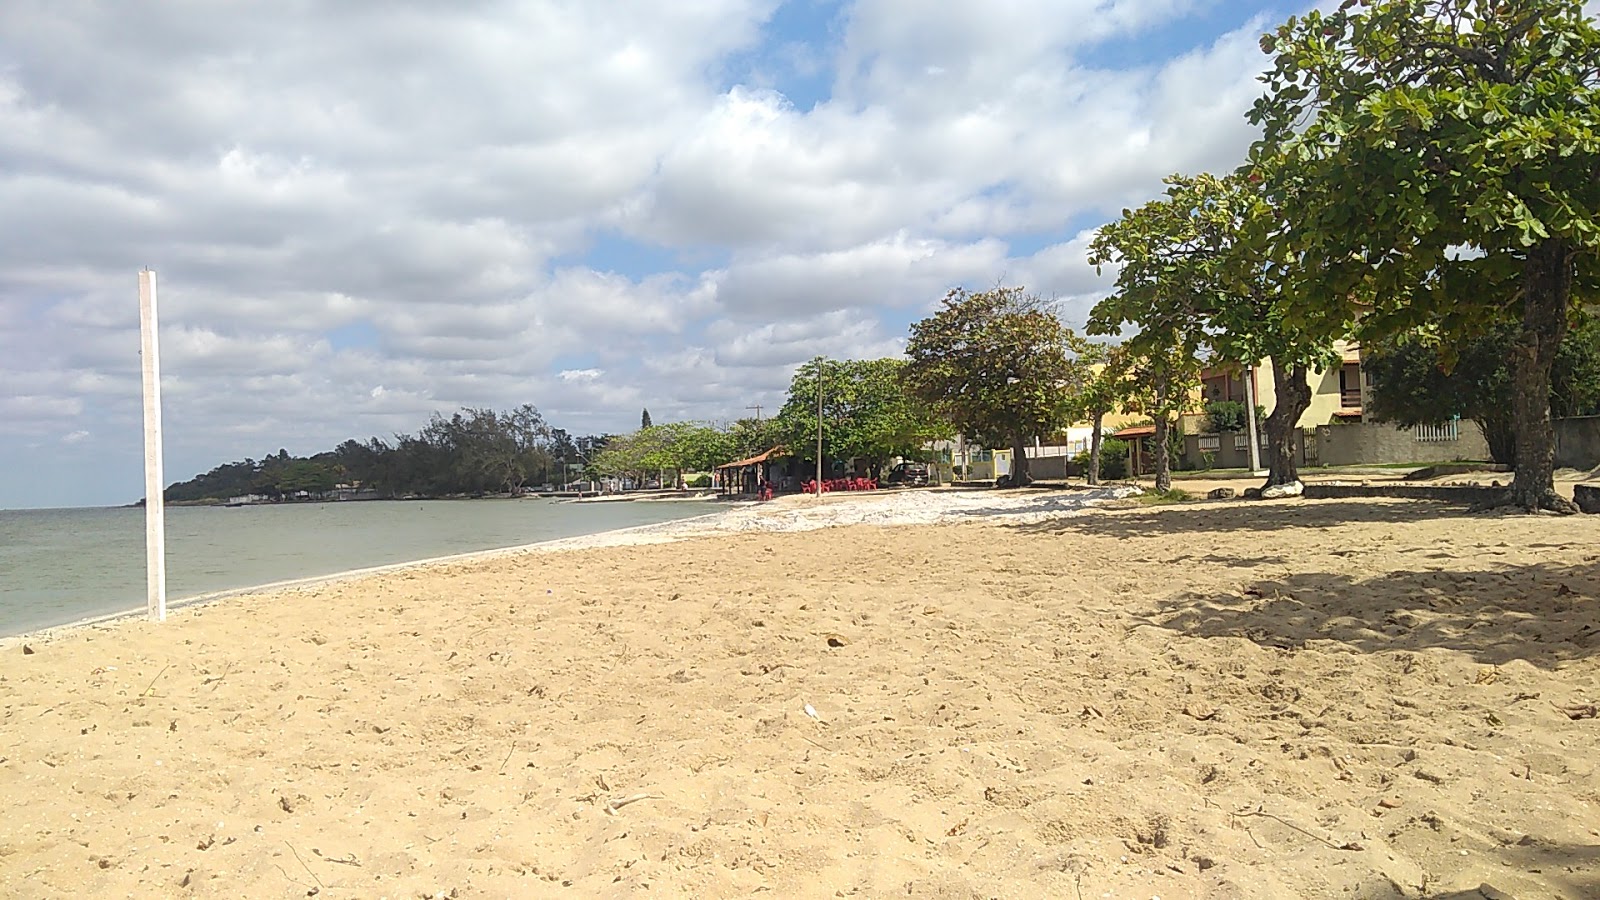 Foto de Araruama Lagoon Beach - lugar popular entre os apreciadores de relaxamento